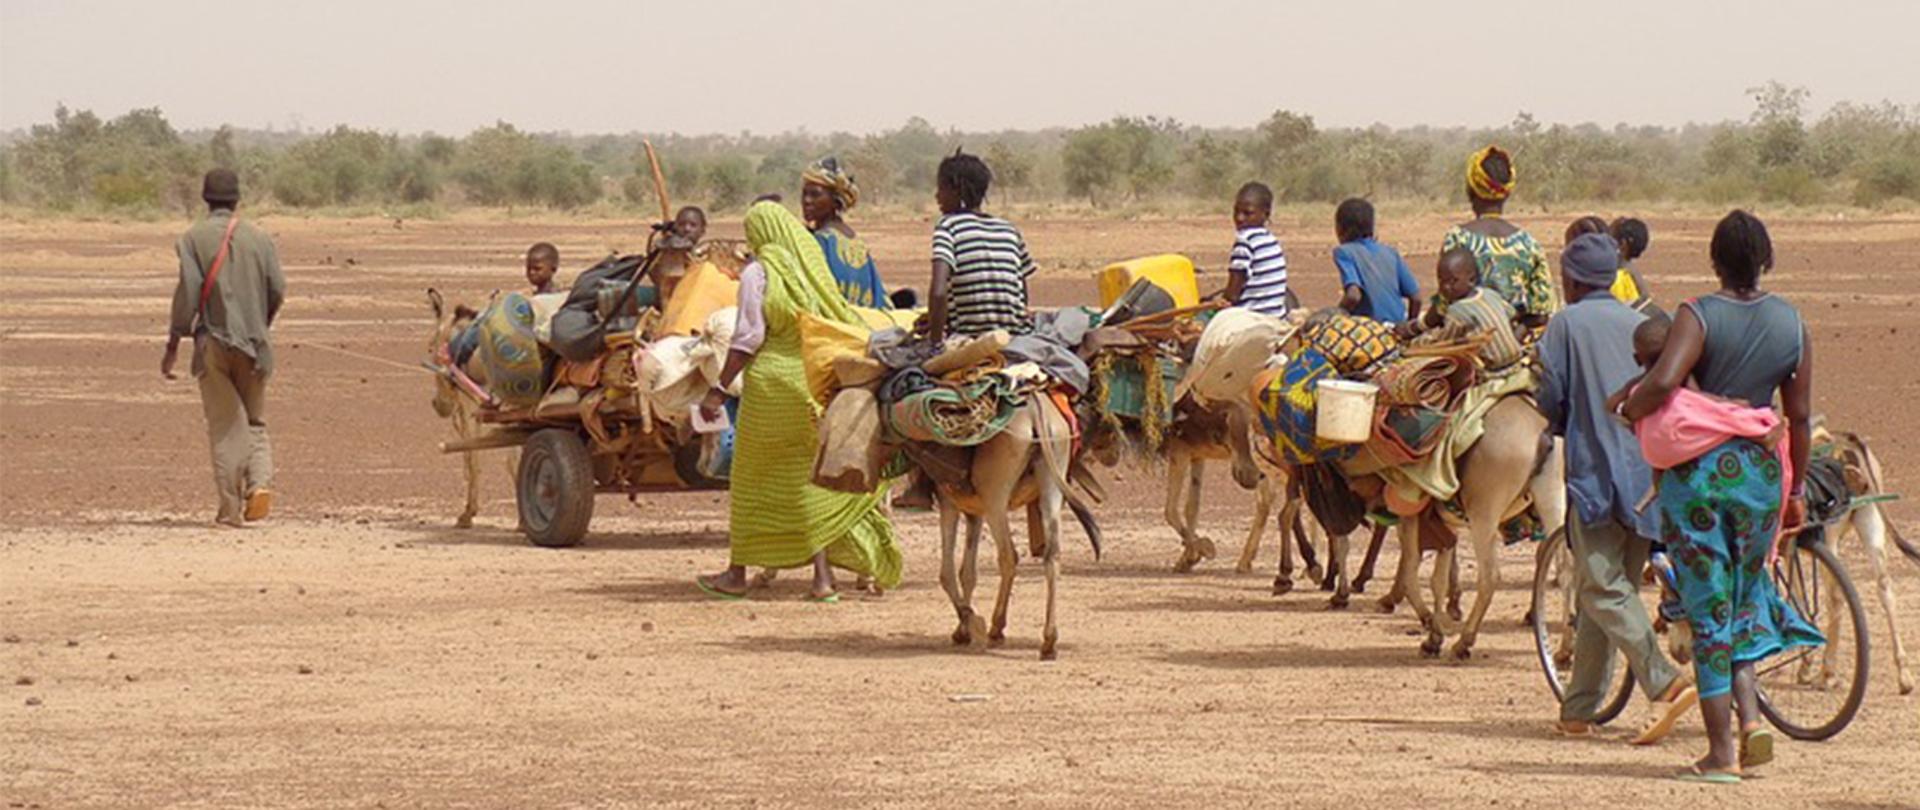 Na zdjęciu: grupa migrantów przemieszczająca się na osłach wraz z bagażami przez pustynię